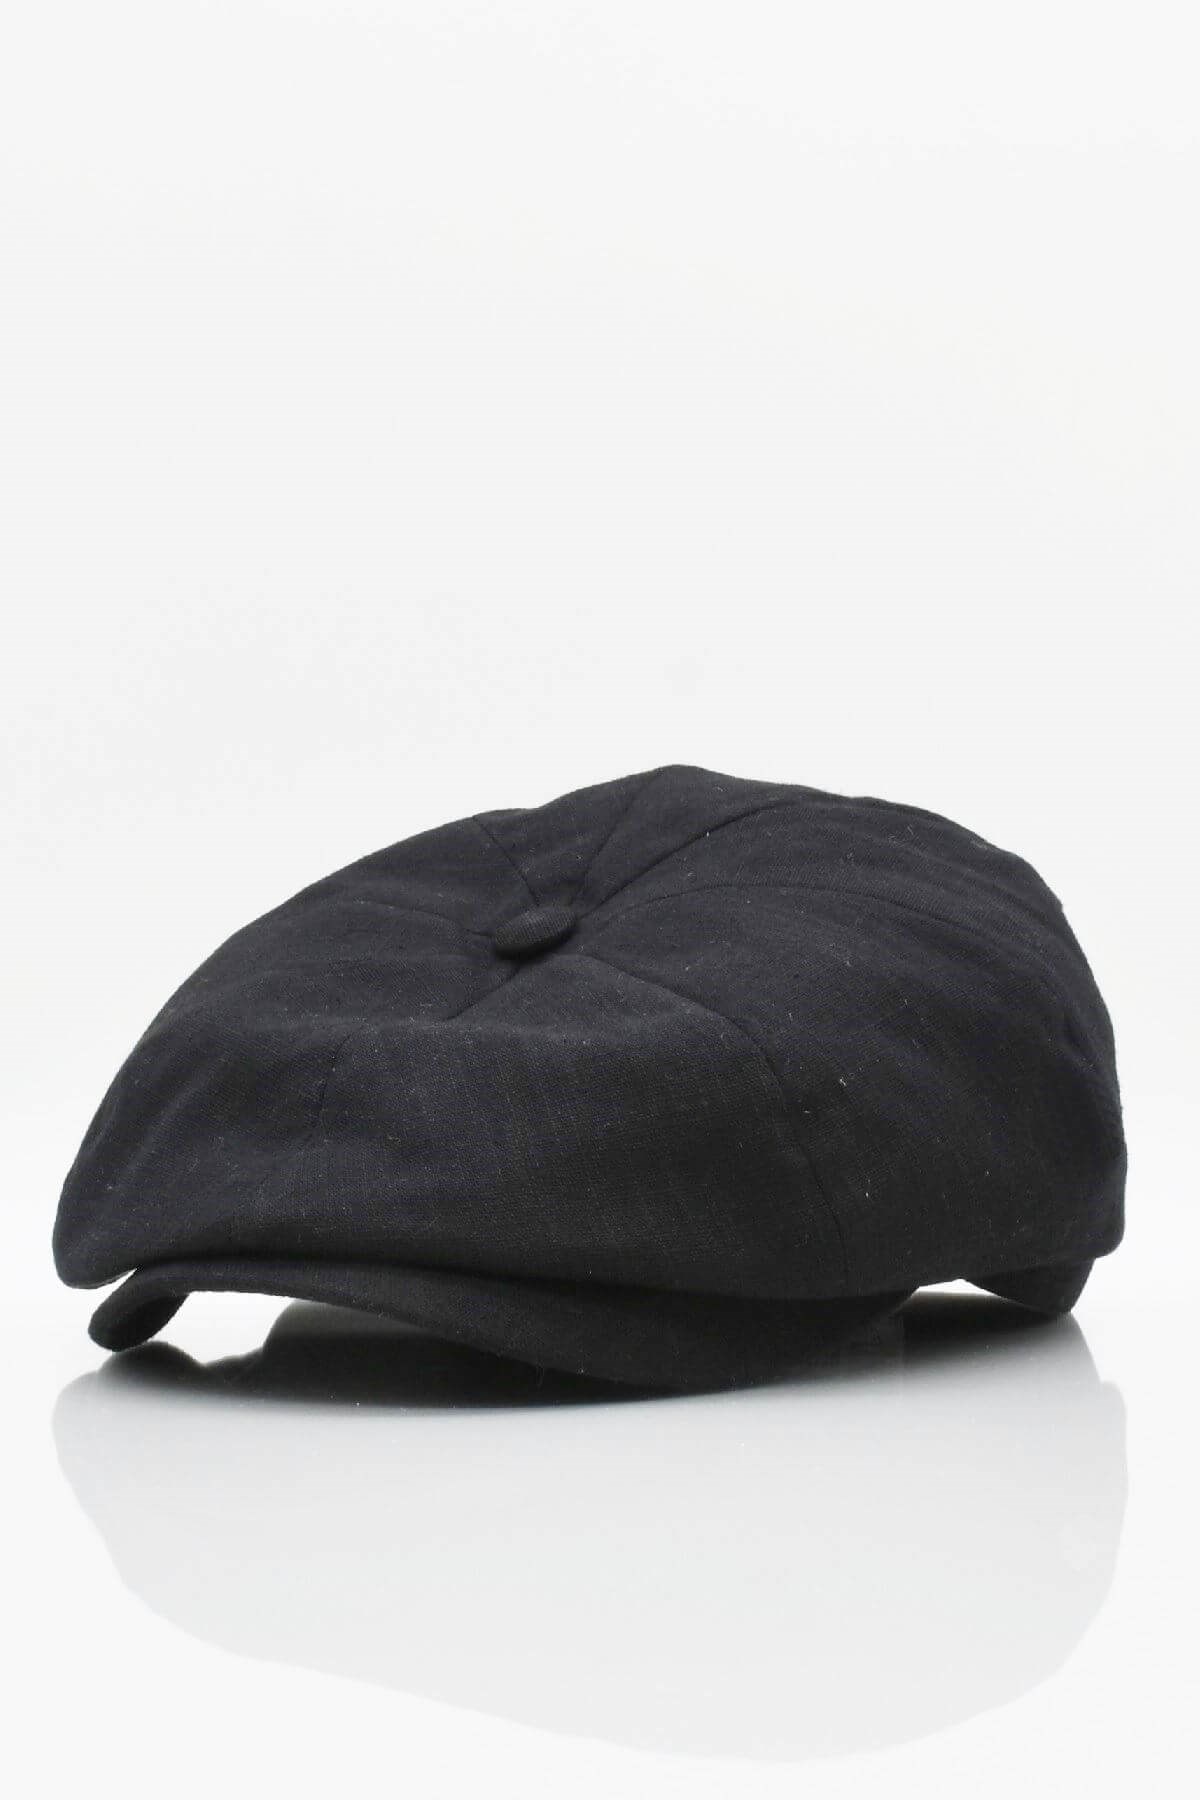 Külah İngiliz Stili London Kasket Yazlık Keten Şapka KLH0626